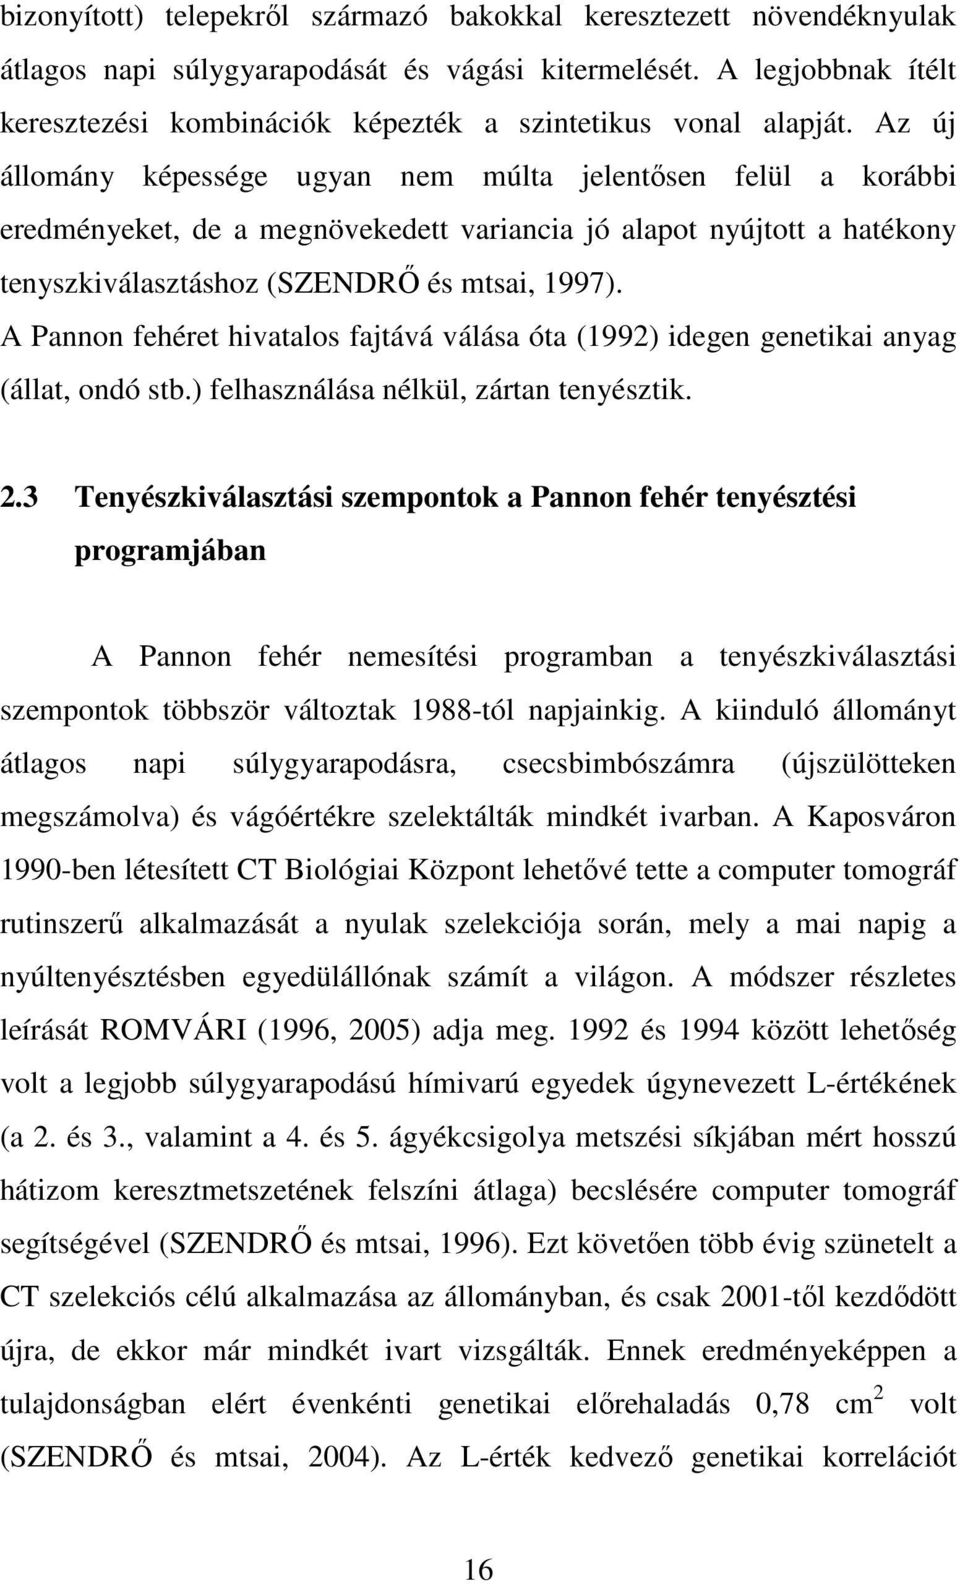 Az új állomány képessége ugyan nem múlta jelentısen felül a korábbi eredményeket, de a megnövekedett variancia jó alapot nyújtott a hatékony tenyszkiválasztáshoz (SZENDRİ és mtsai, 1997).